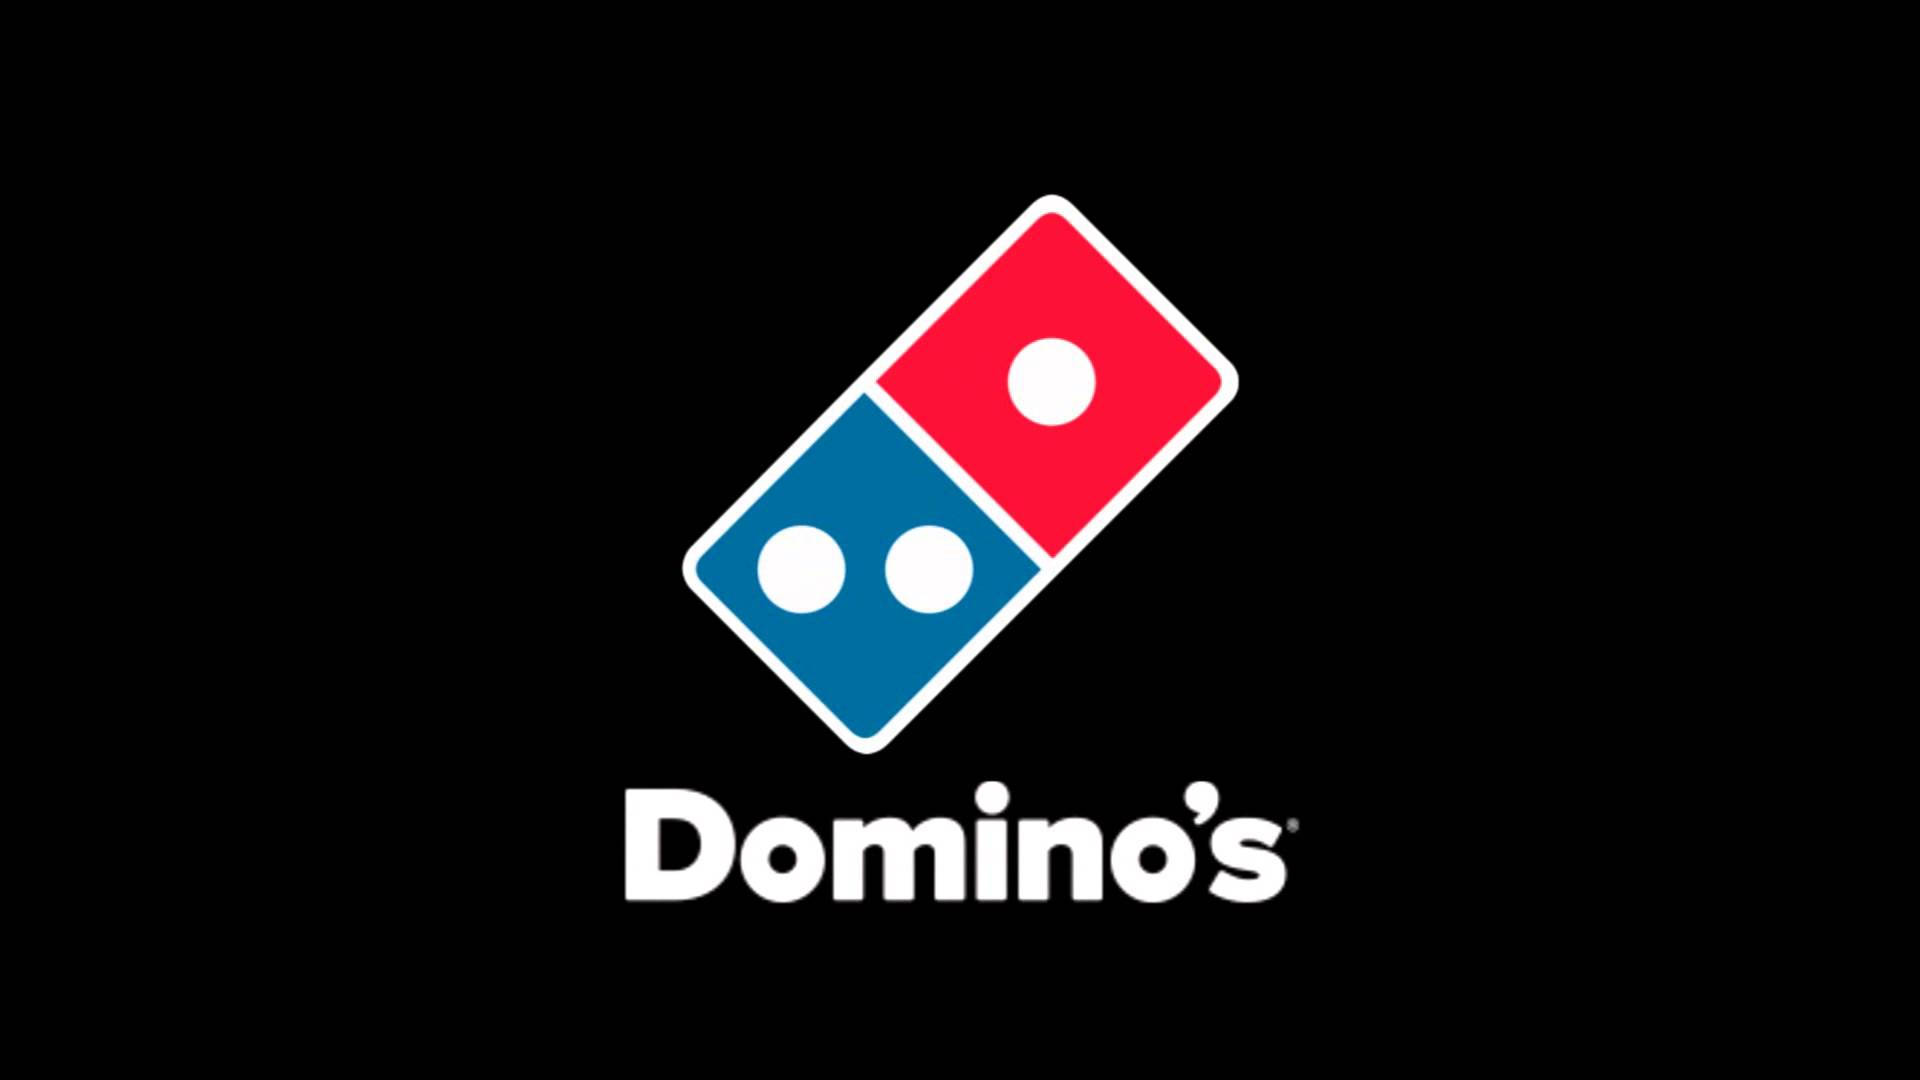 Logotipode Dominos Pizza En Negro. Fondo de pantalla